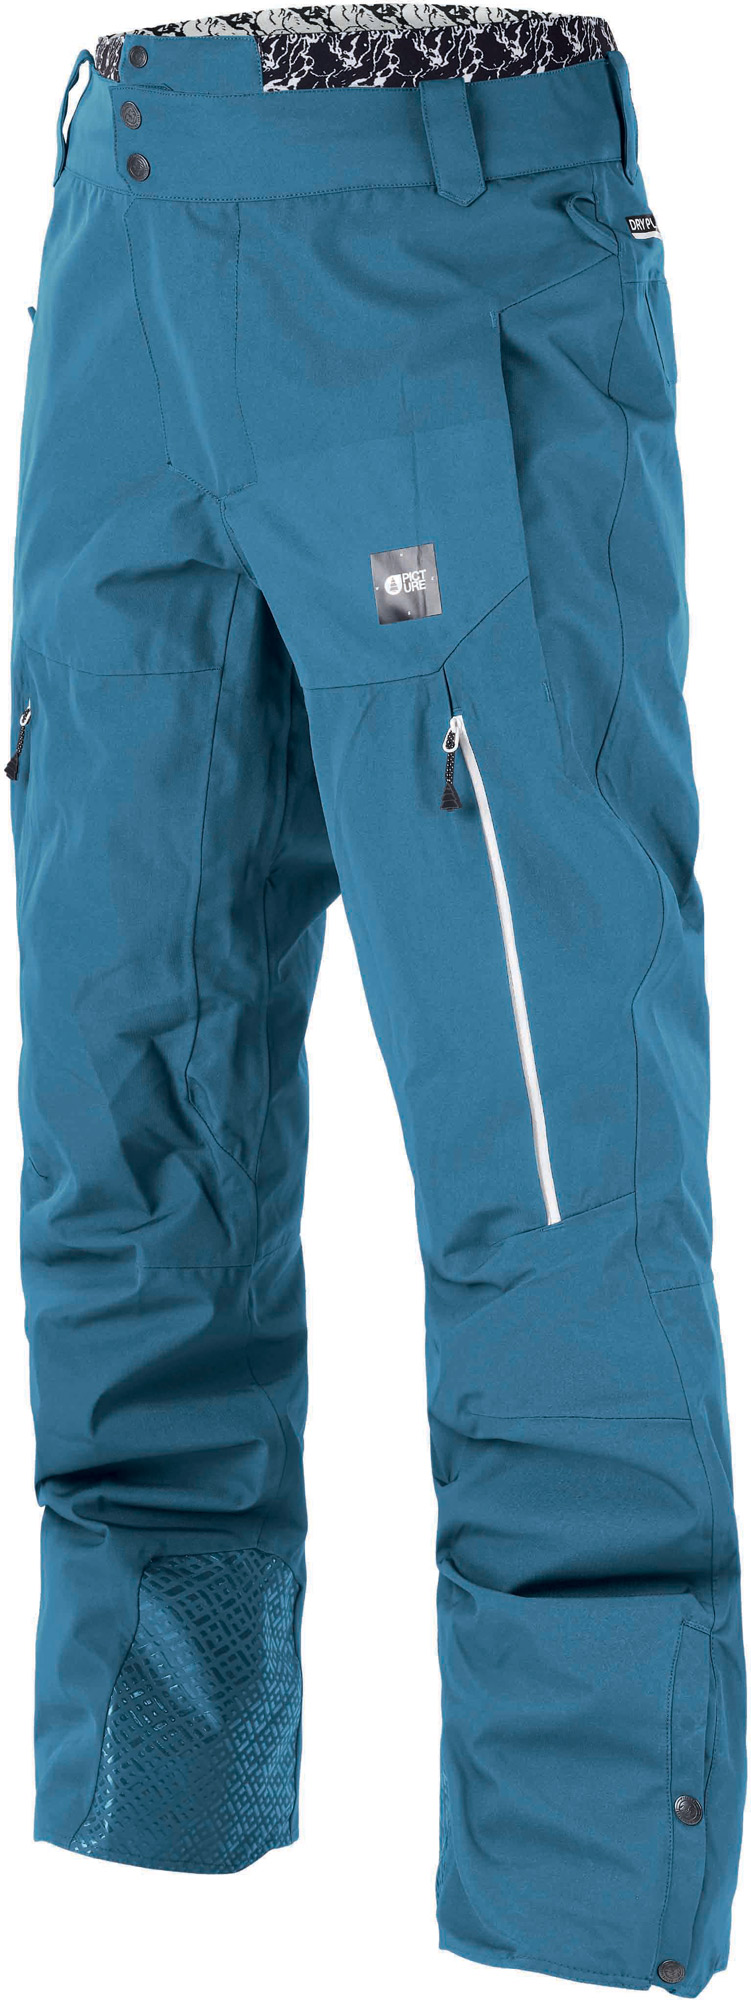 Men's winter trousers